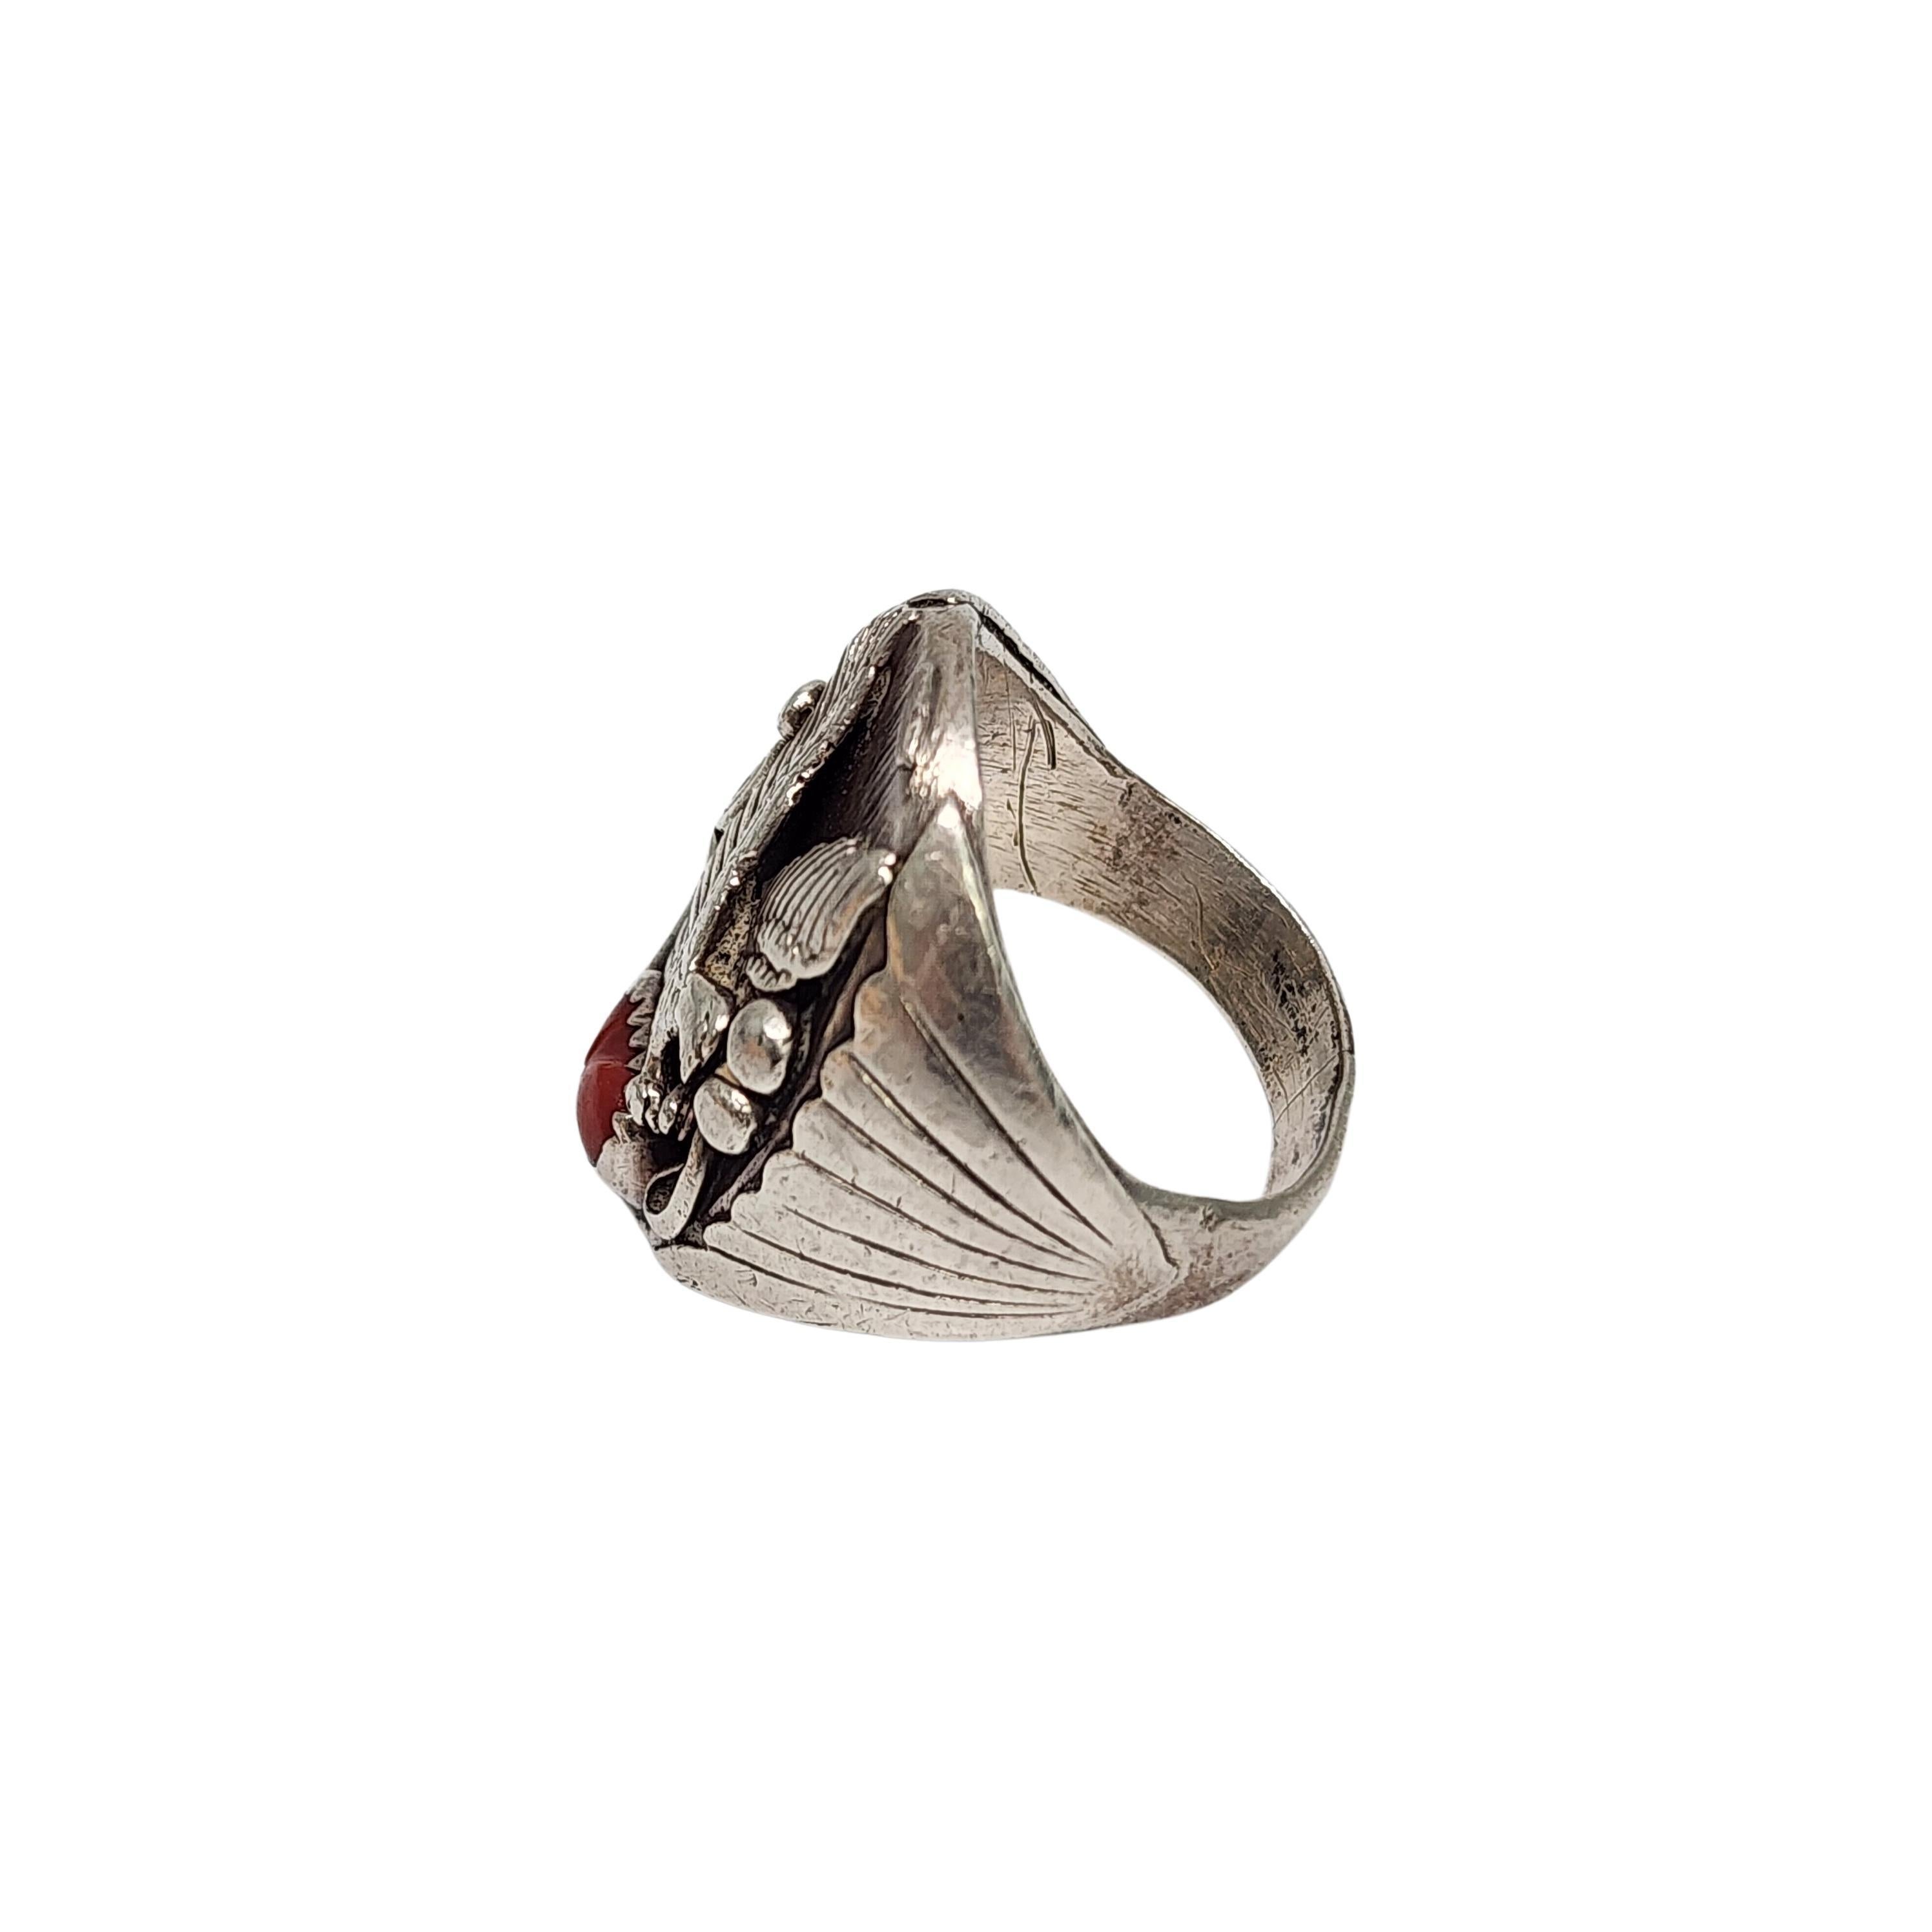 Ring aus Sterlingsilber und Koralle von Richard Begay, einem indianischen Kunsthandwerker.

Größe 10 1/2

Dieser Ring aus Sterlingsilber zeigt einen fliegenden Adler mit einem roten Korallenstein in einer Sägezahn-Fassung.

Wiegt ca. 20,3g,